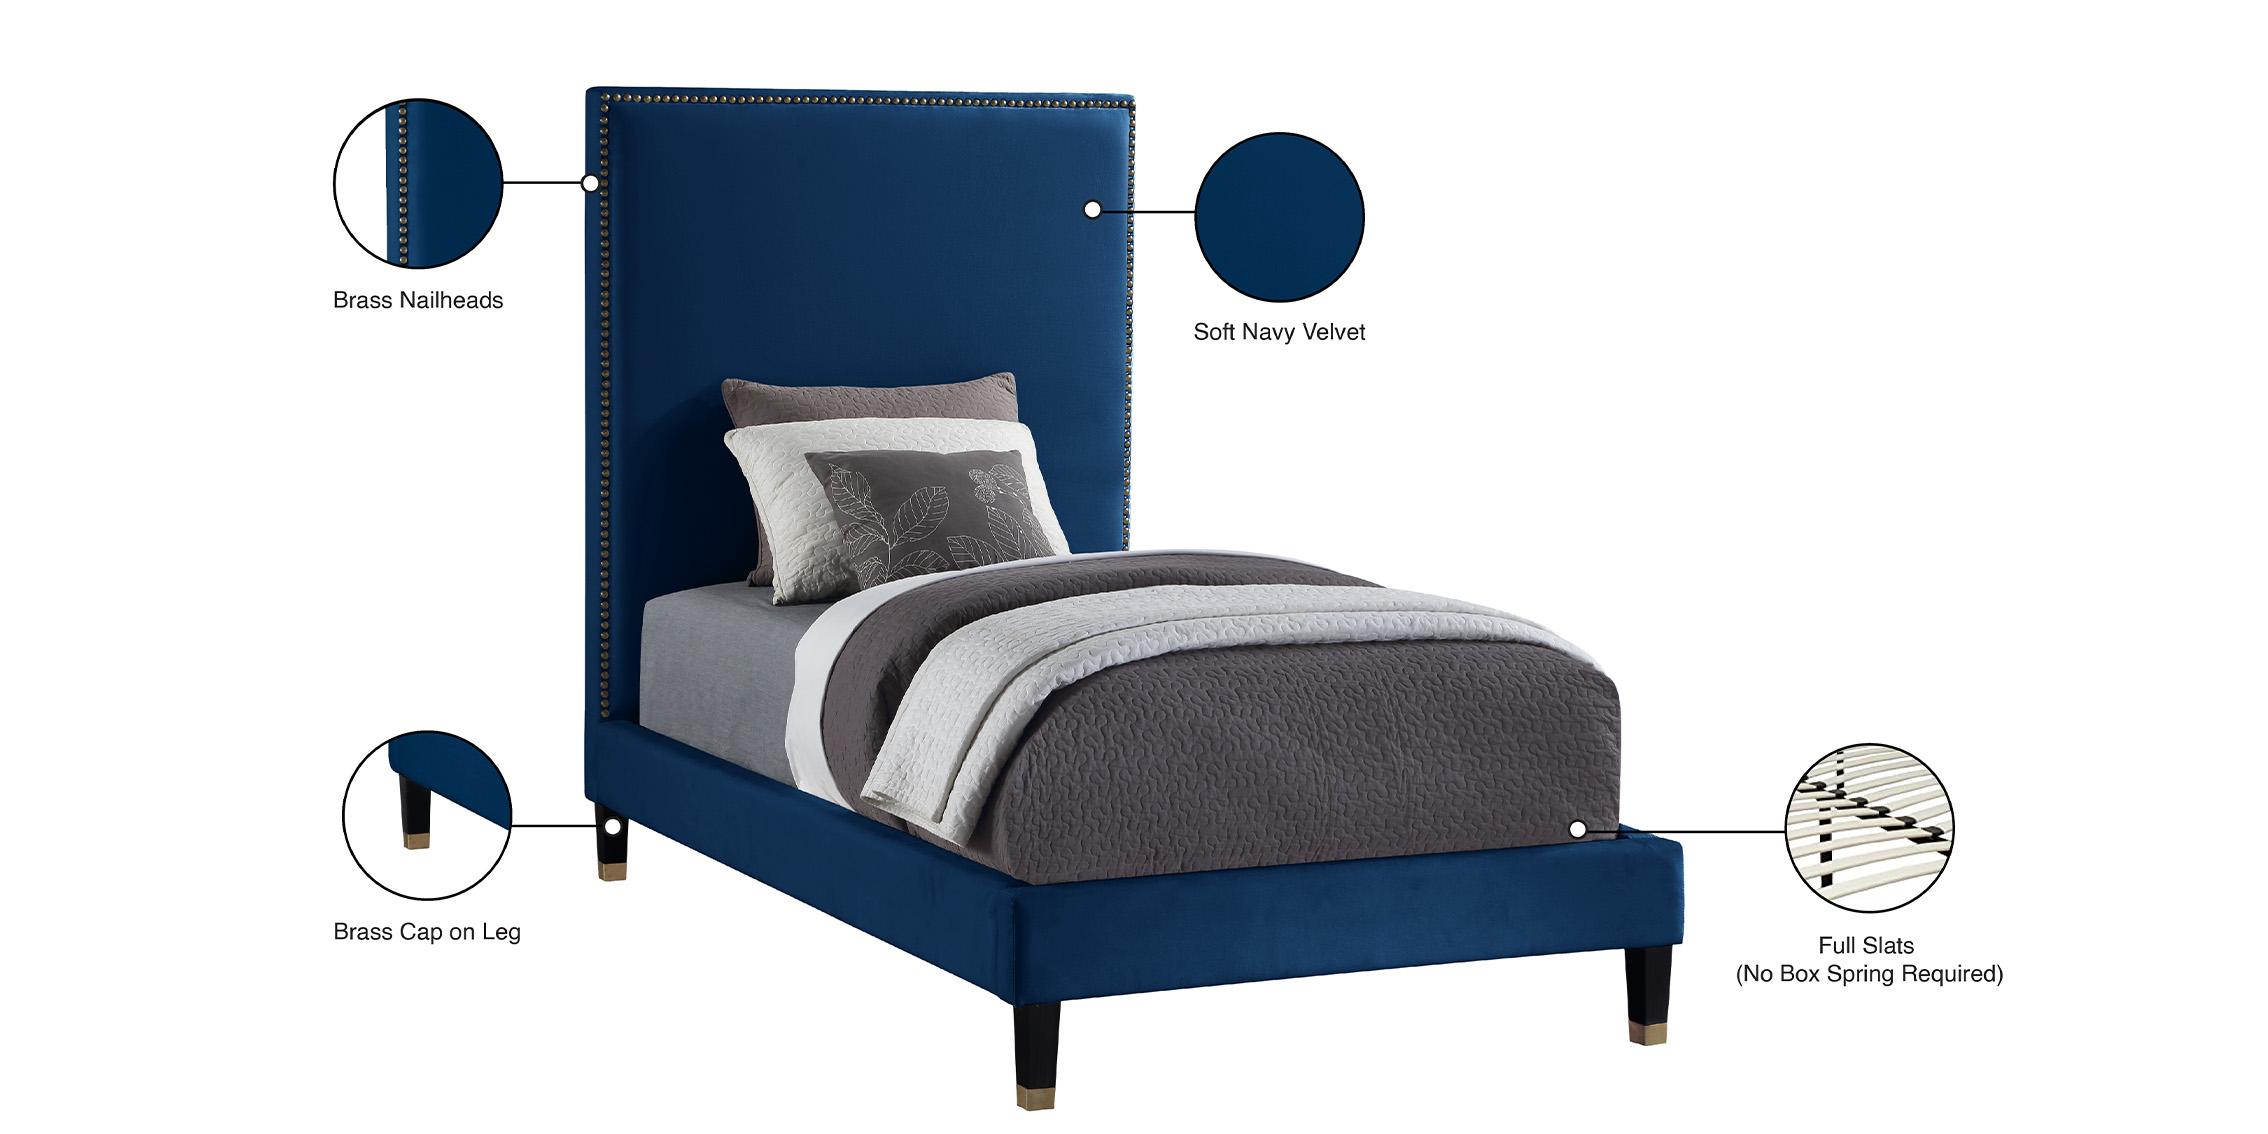 

    
HarlieNavy-T Meridian Furniture Platform Bed
